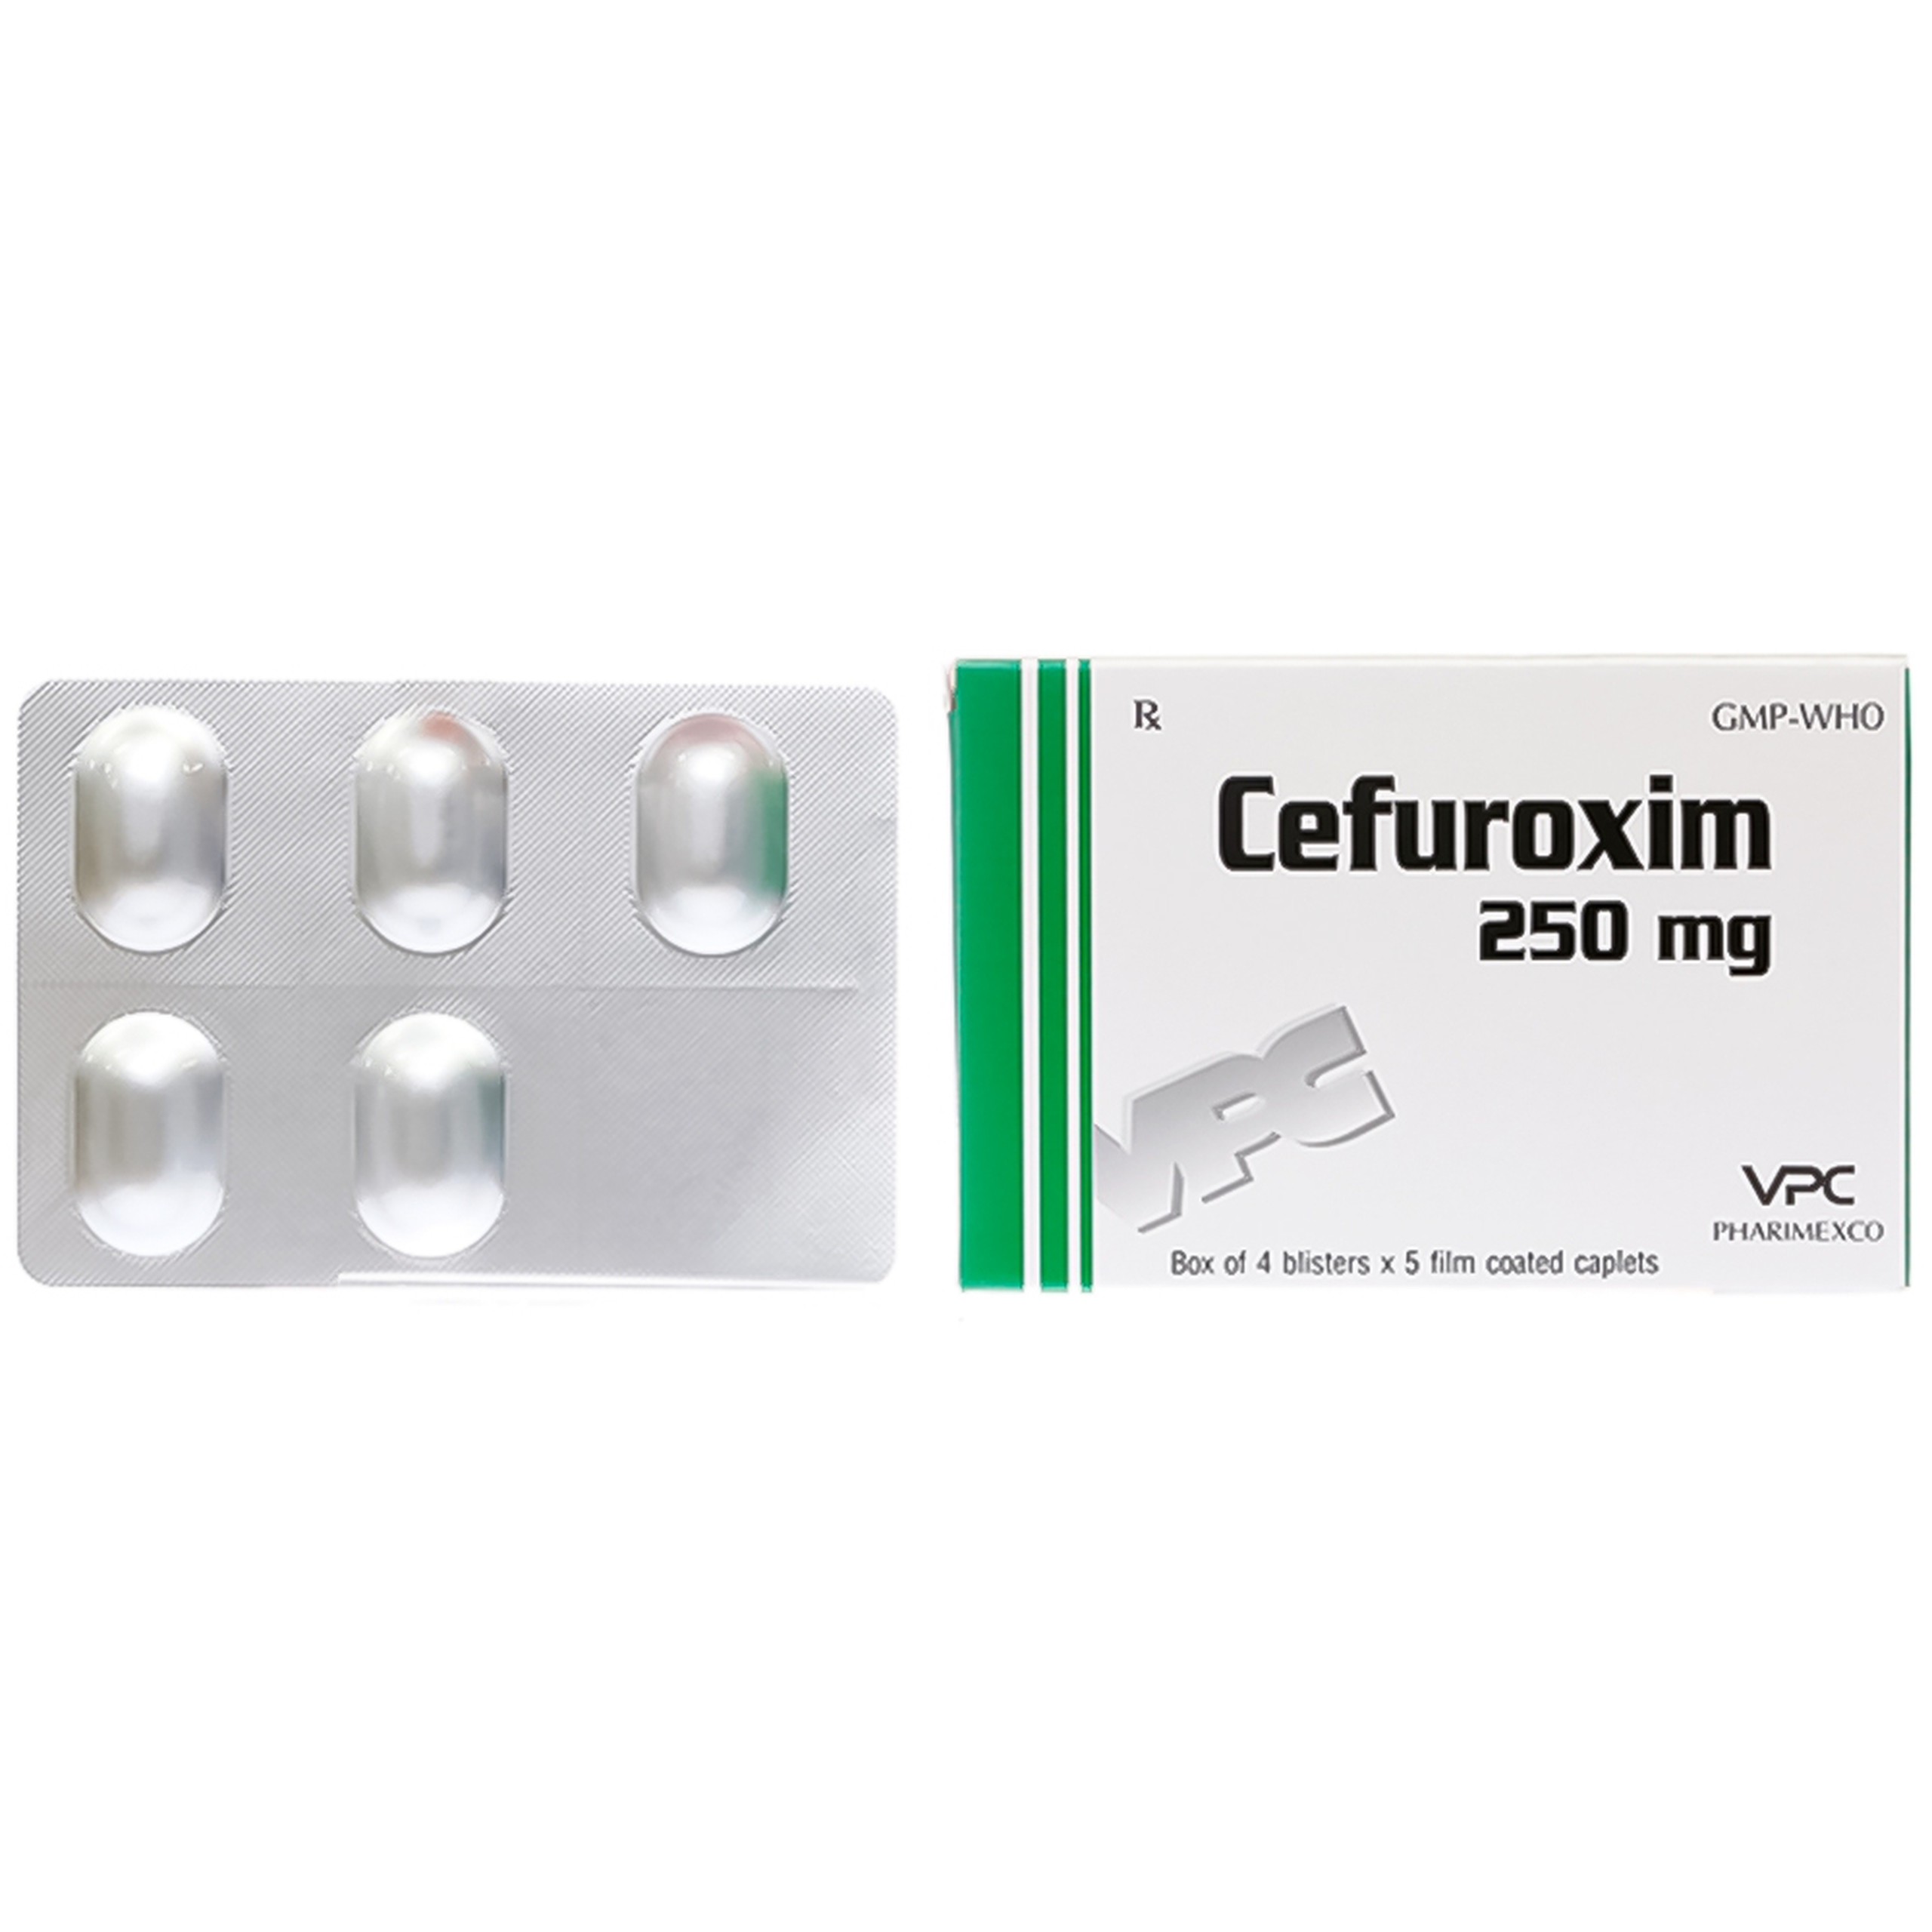 Thuốc Cefuroxim 250mg Pharimexco điều trị nhiễm khuẩn (4 vỉ x 5 viên)